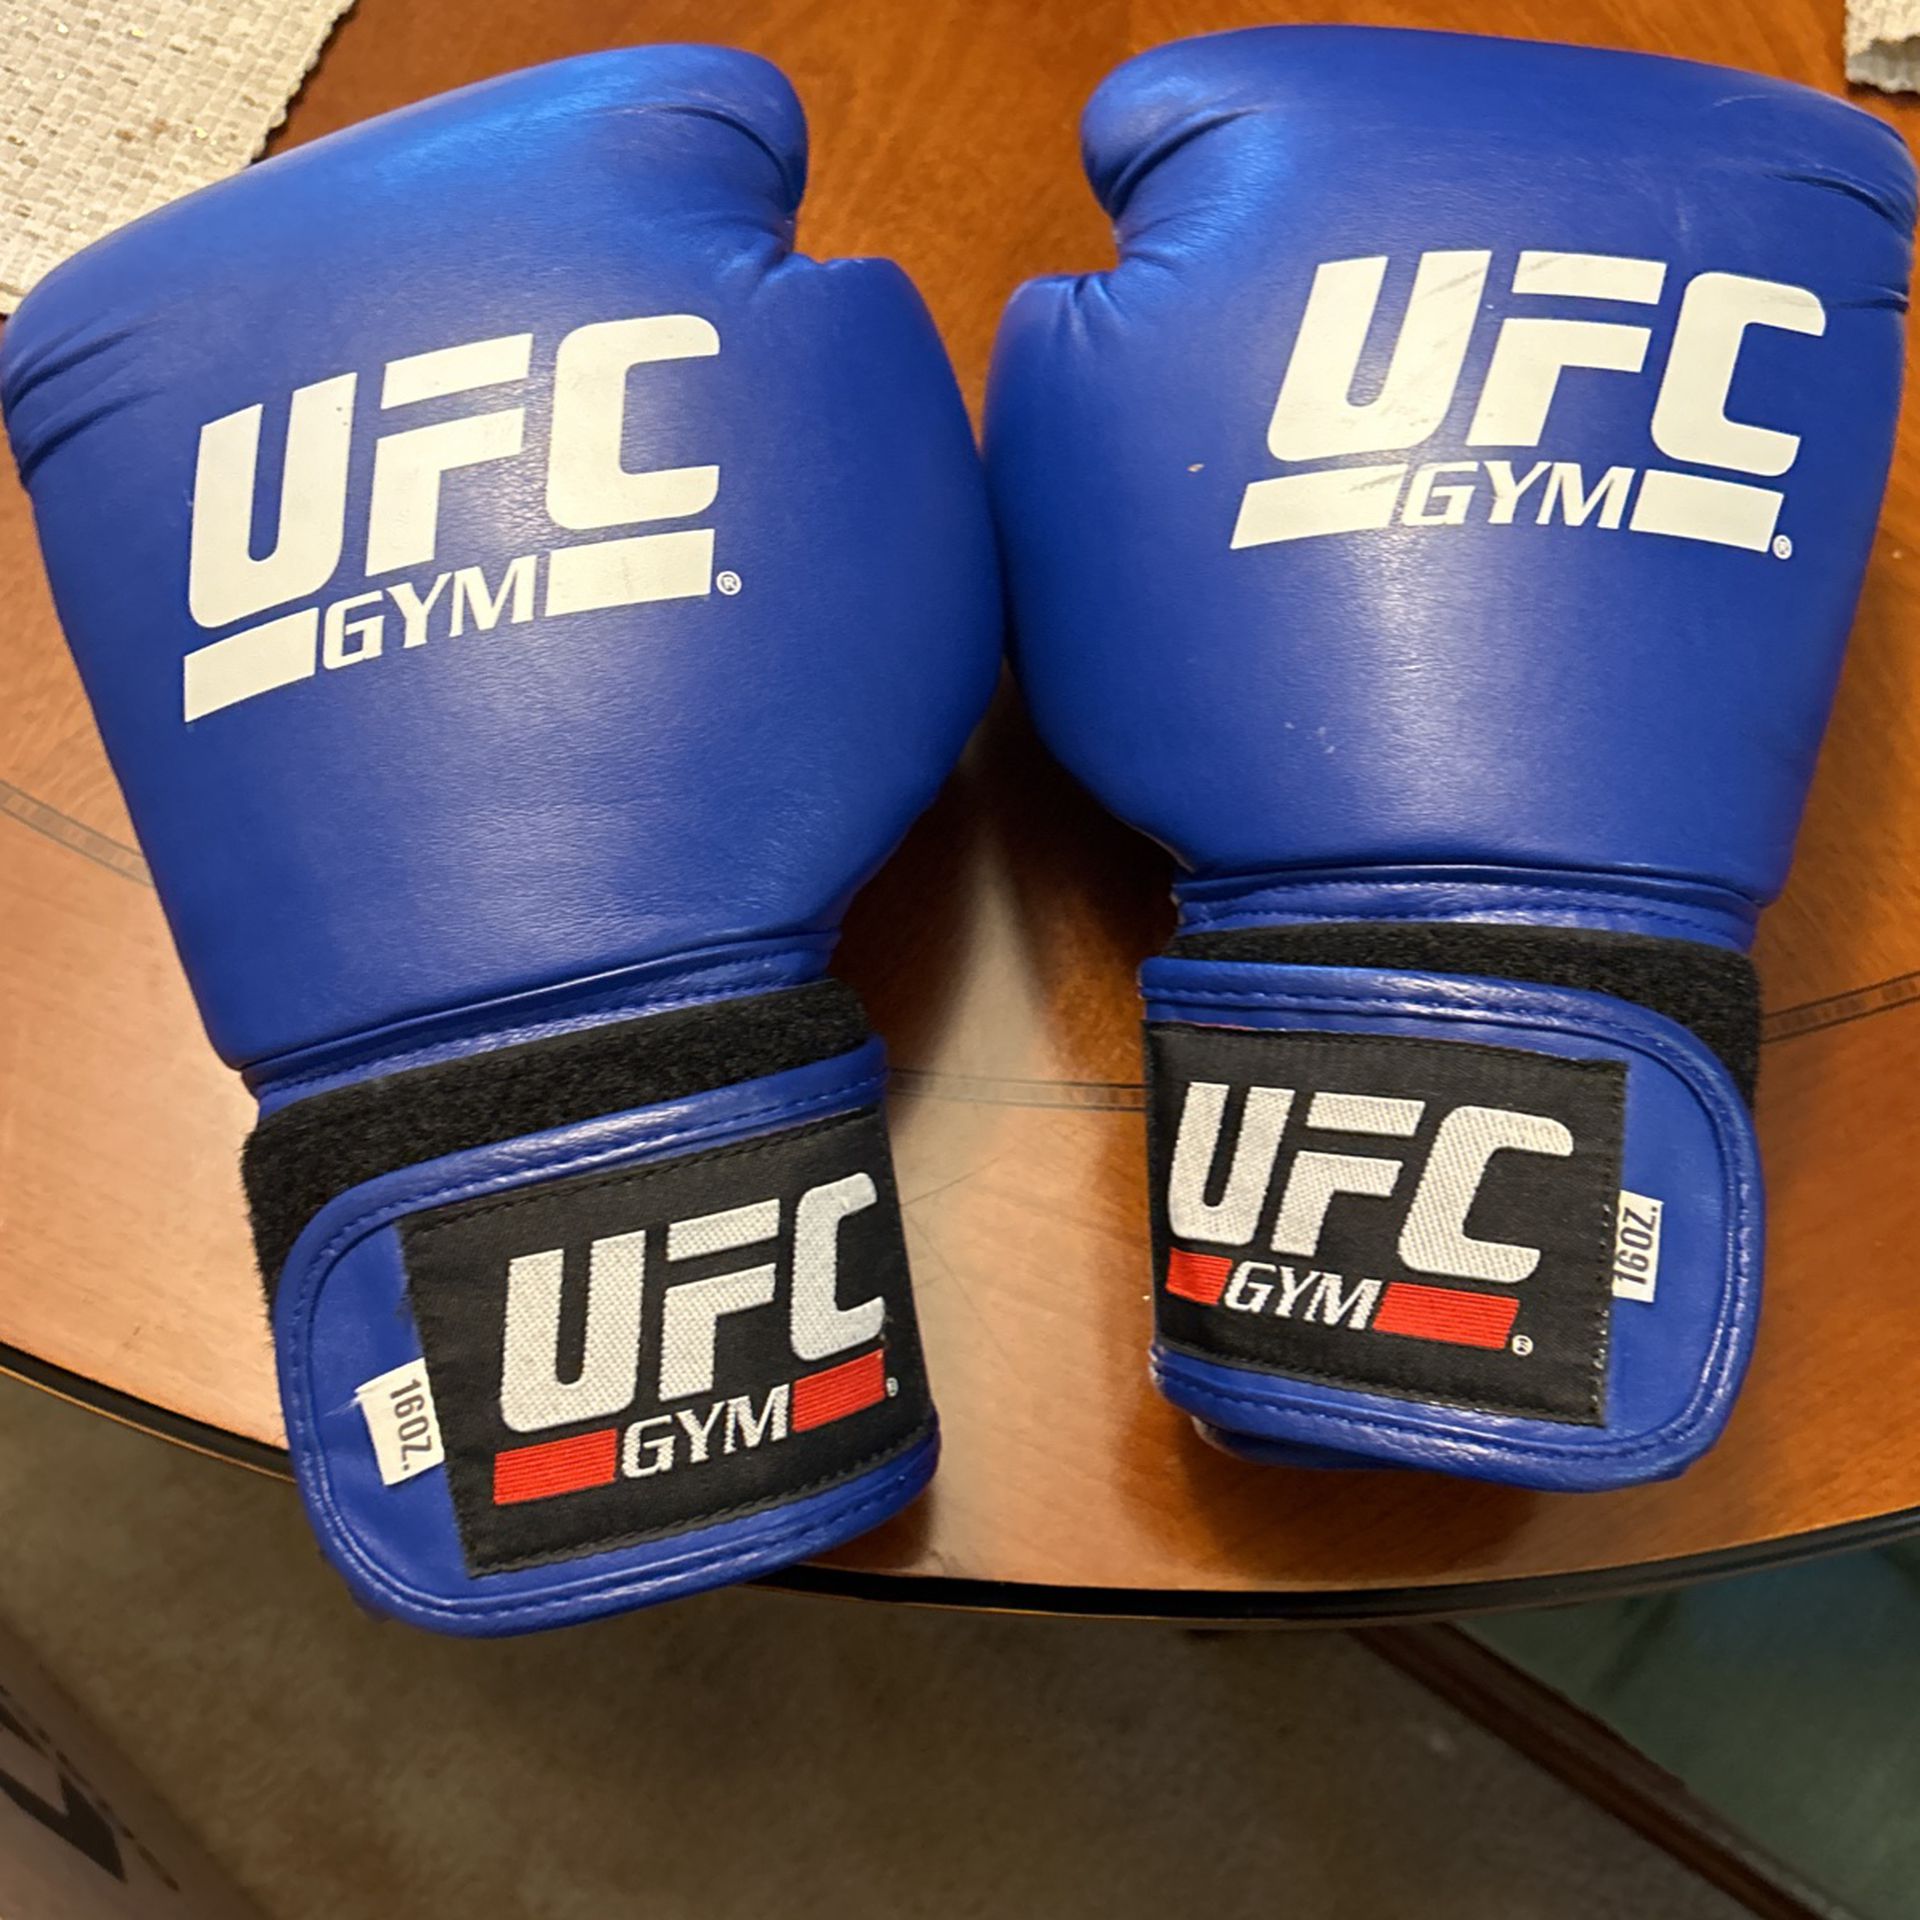 UFC Gloves 